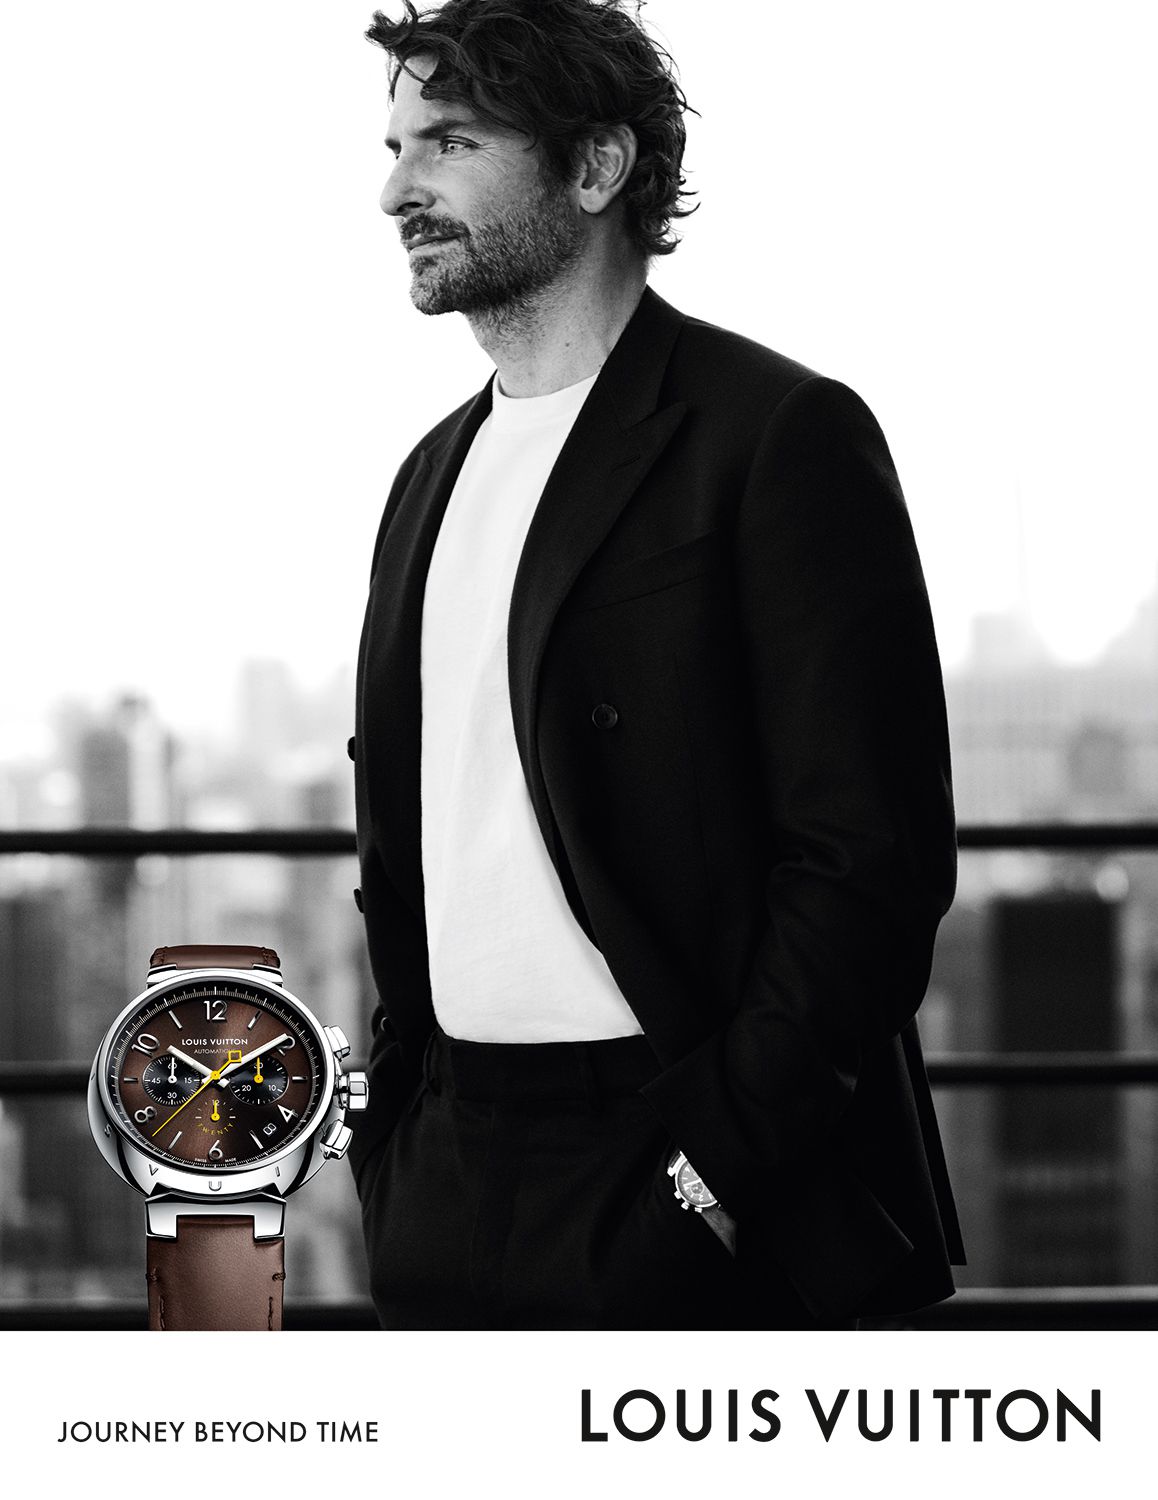 Inzwischen wurde Bradley der erste Uhrenbotschafter von Louis Vuitton